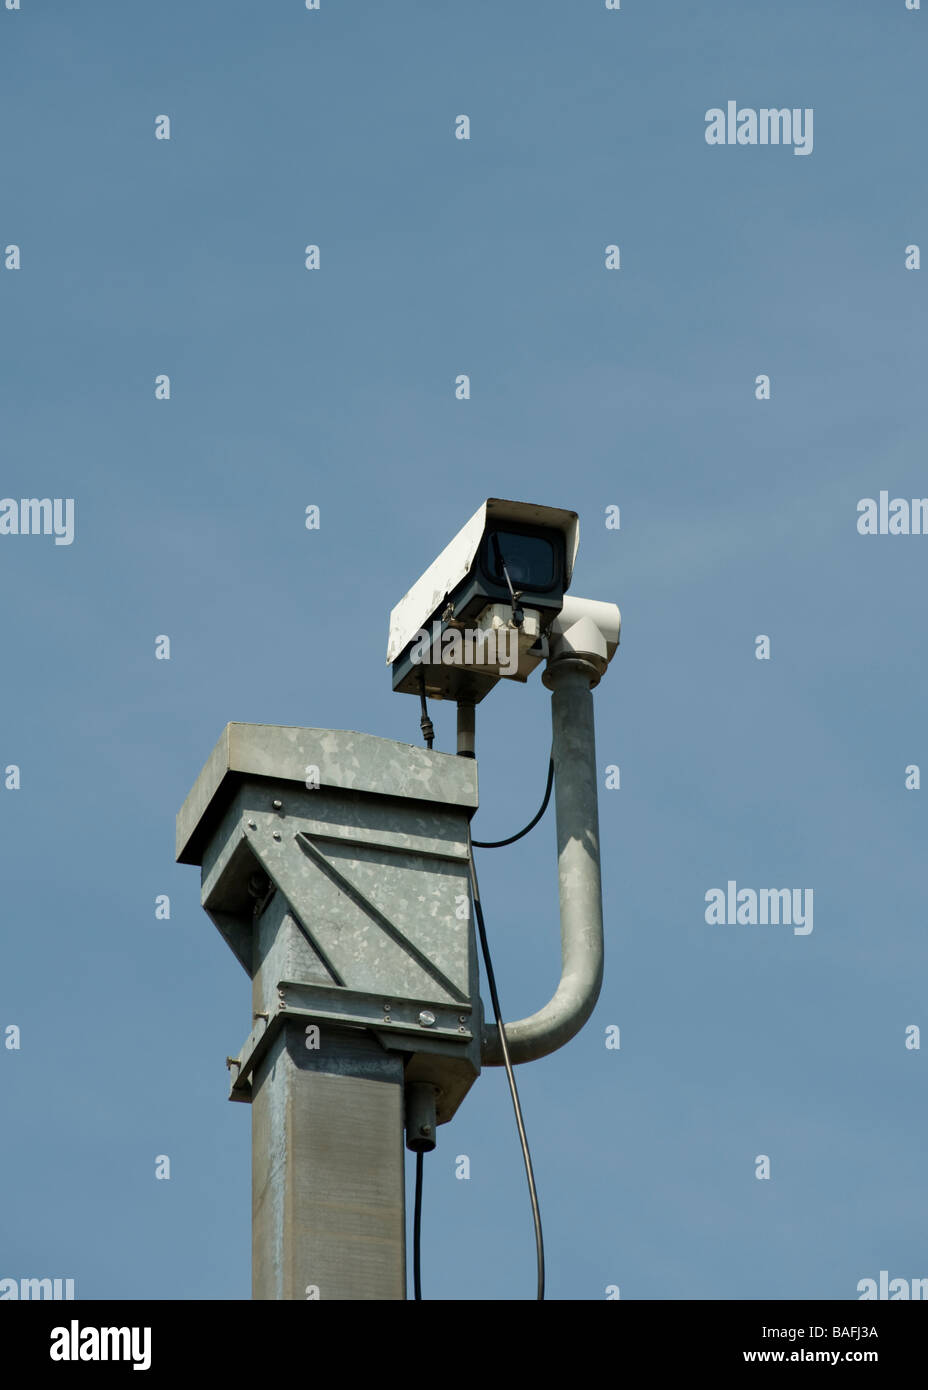 Polizia stradale Telecamera di sorveglianza continua a guardare oltre la M25 in Essex. Sicurezza o intrusioni? Foto Stock